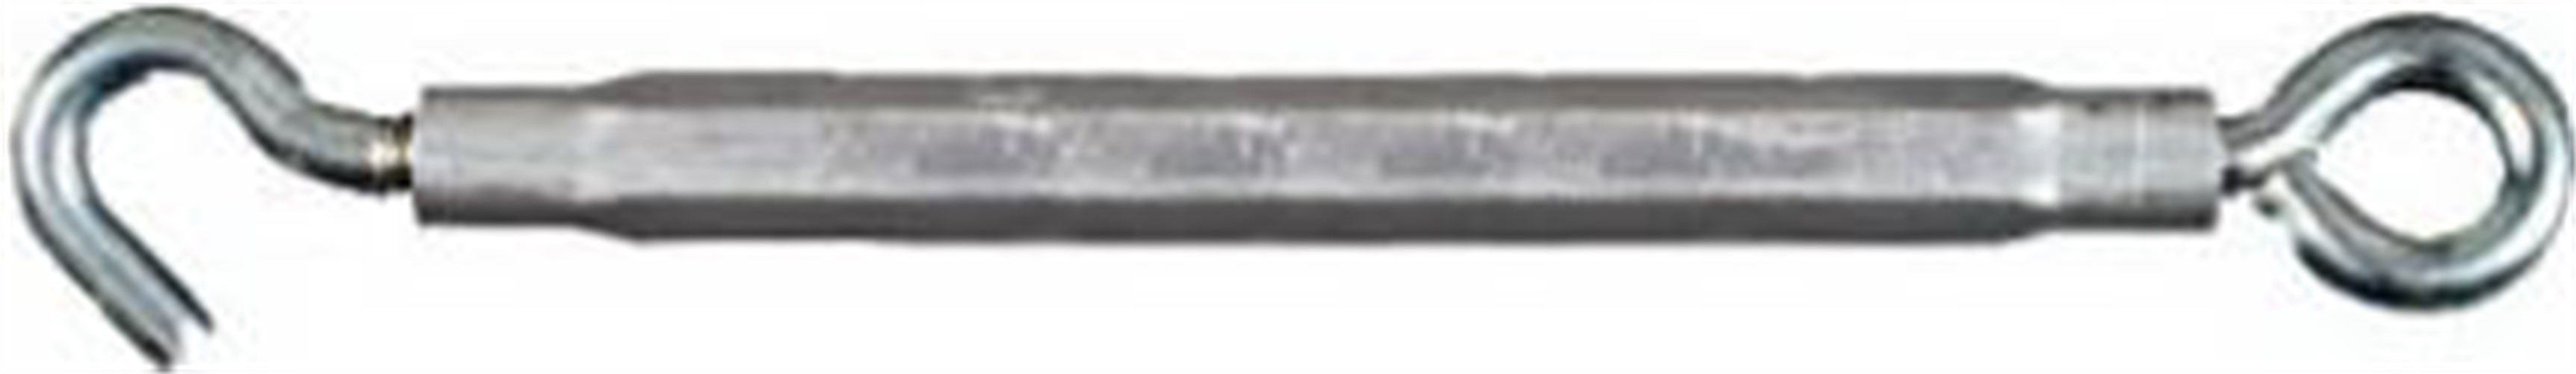 National Hardware - 2172BC 16" x 3/8" Hook / Eye Turnbuckle - Zinc Plated - image 2 of 2